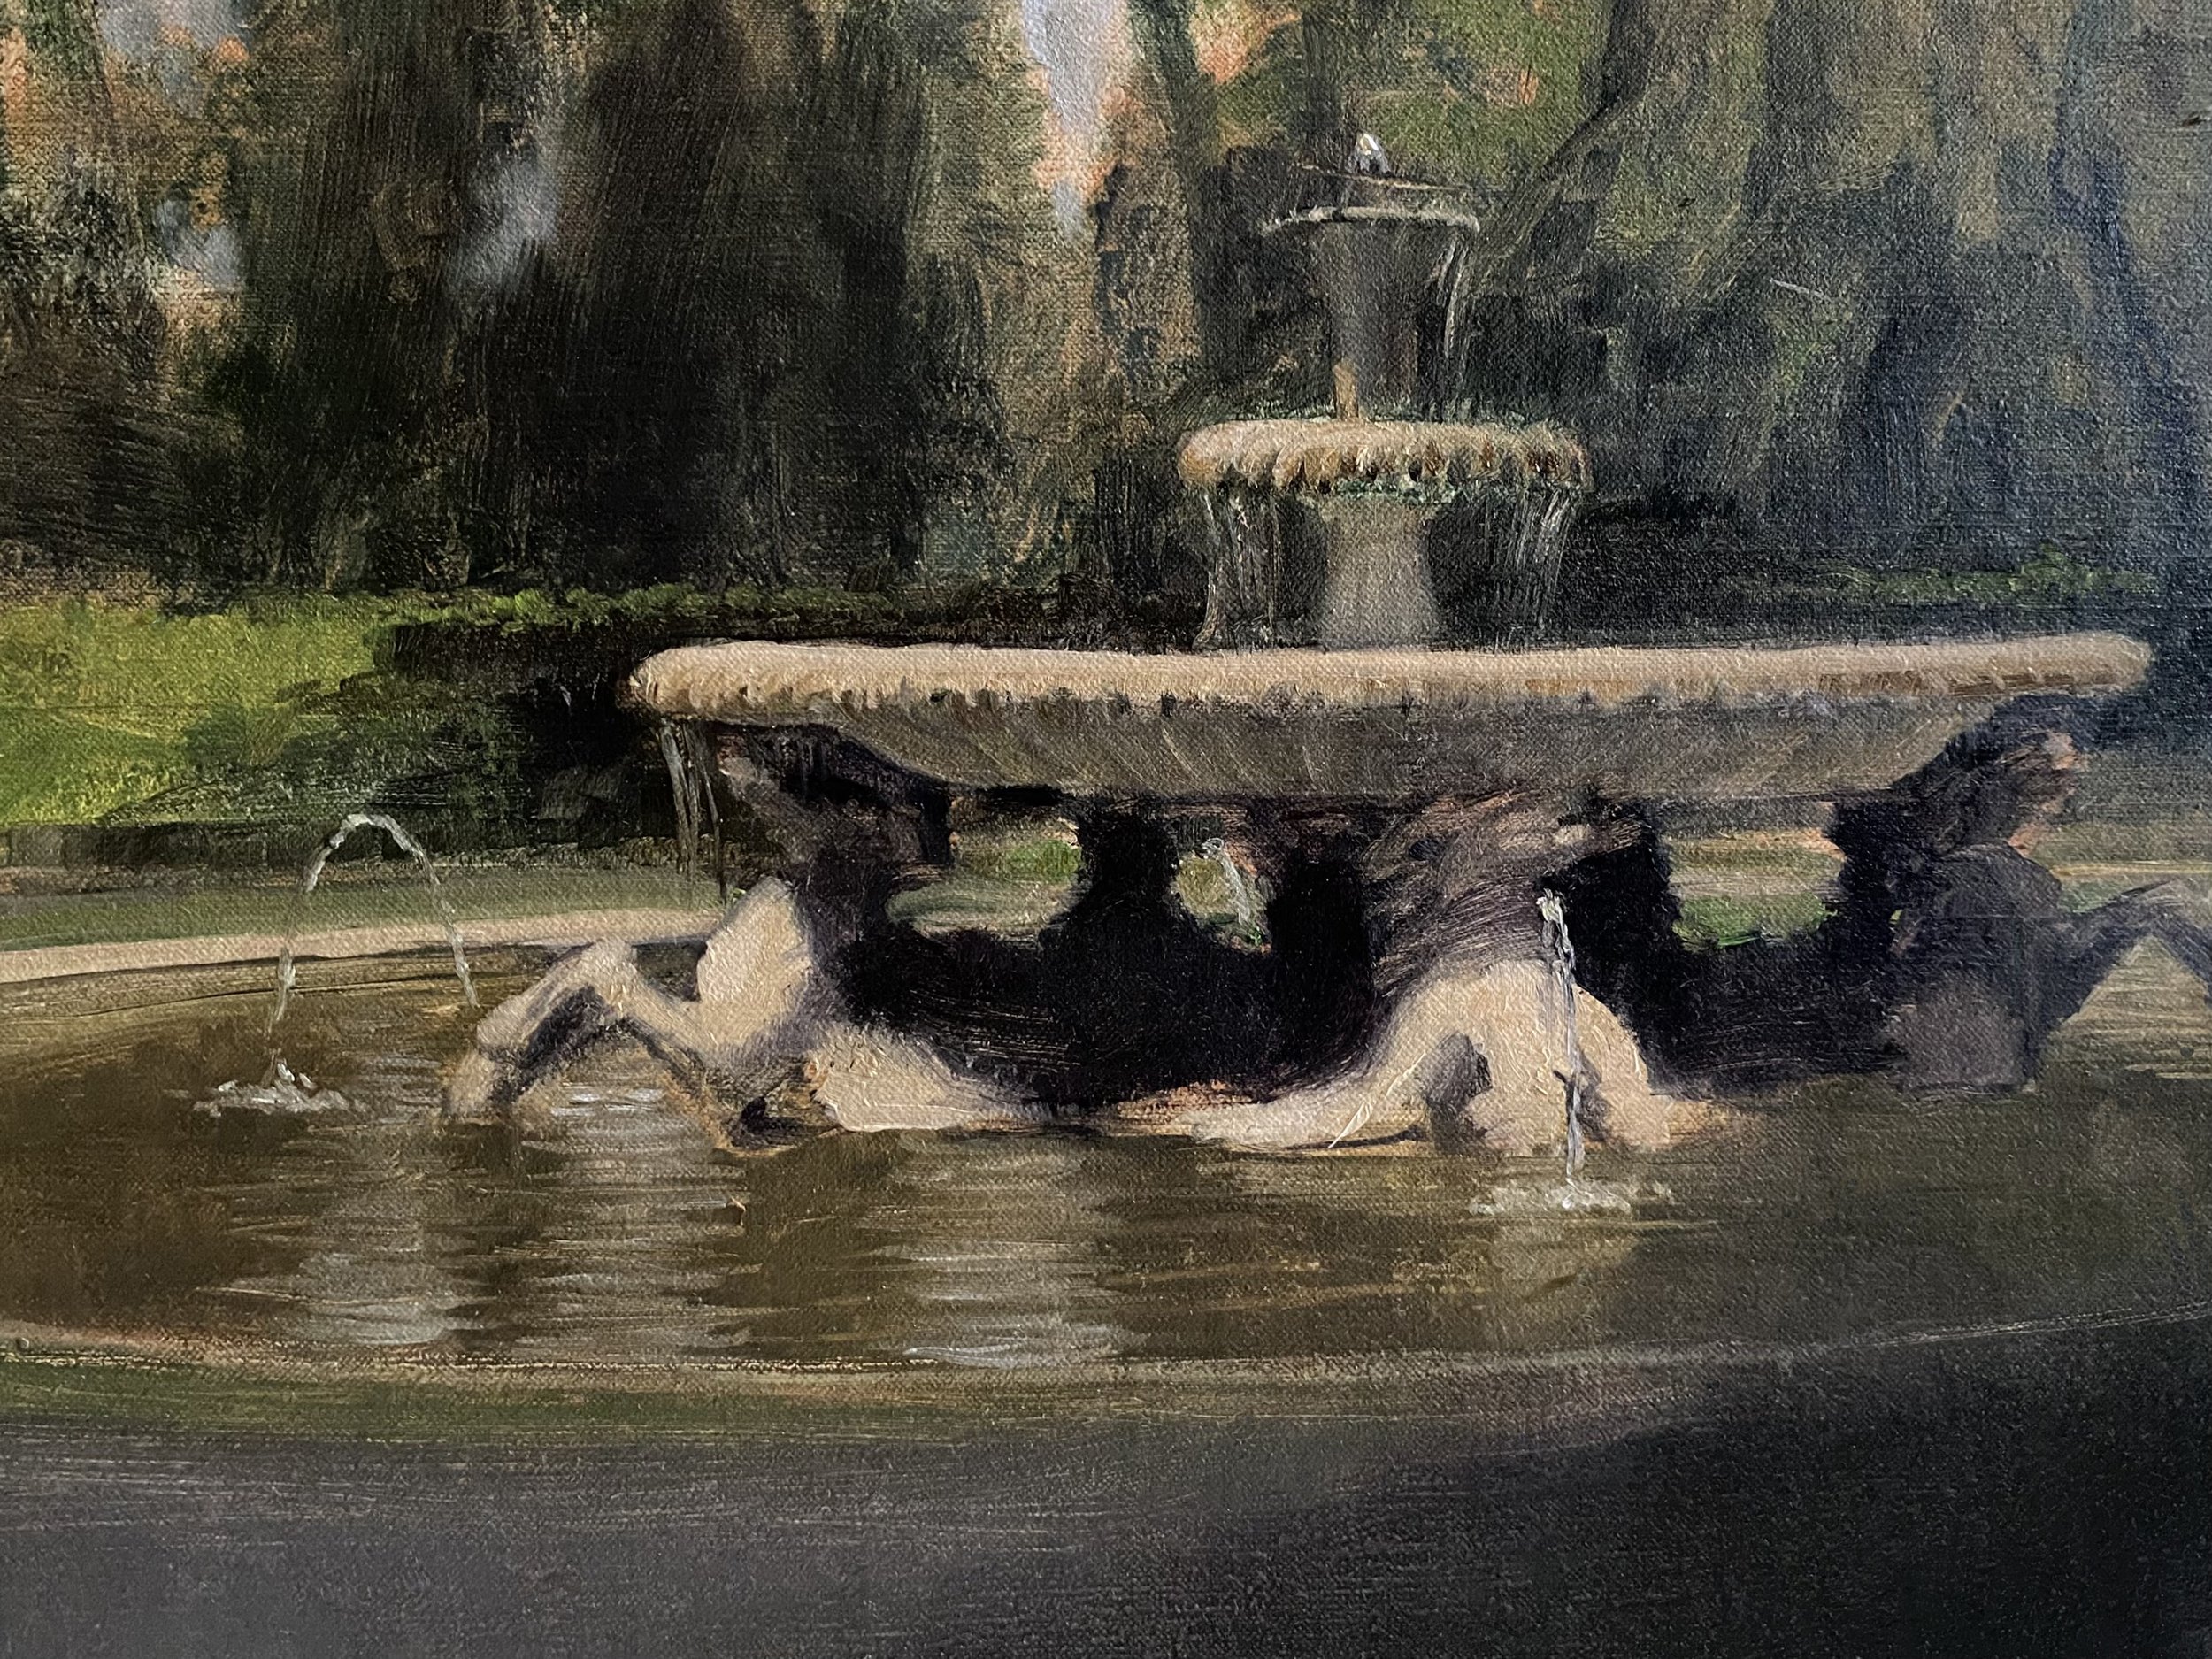 "Bernini's Four Horses Fountain, Rome"